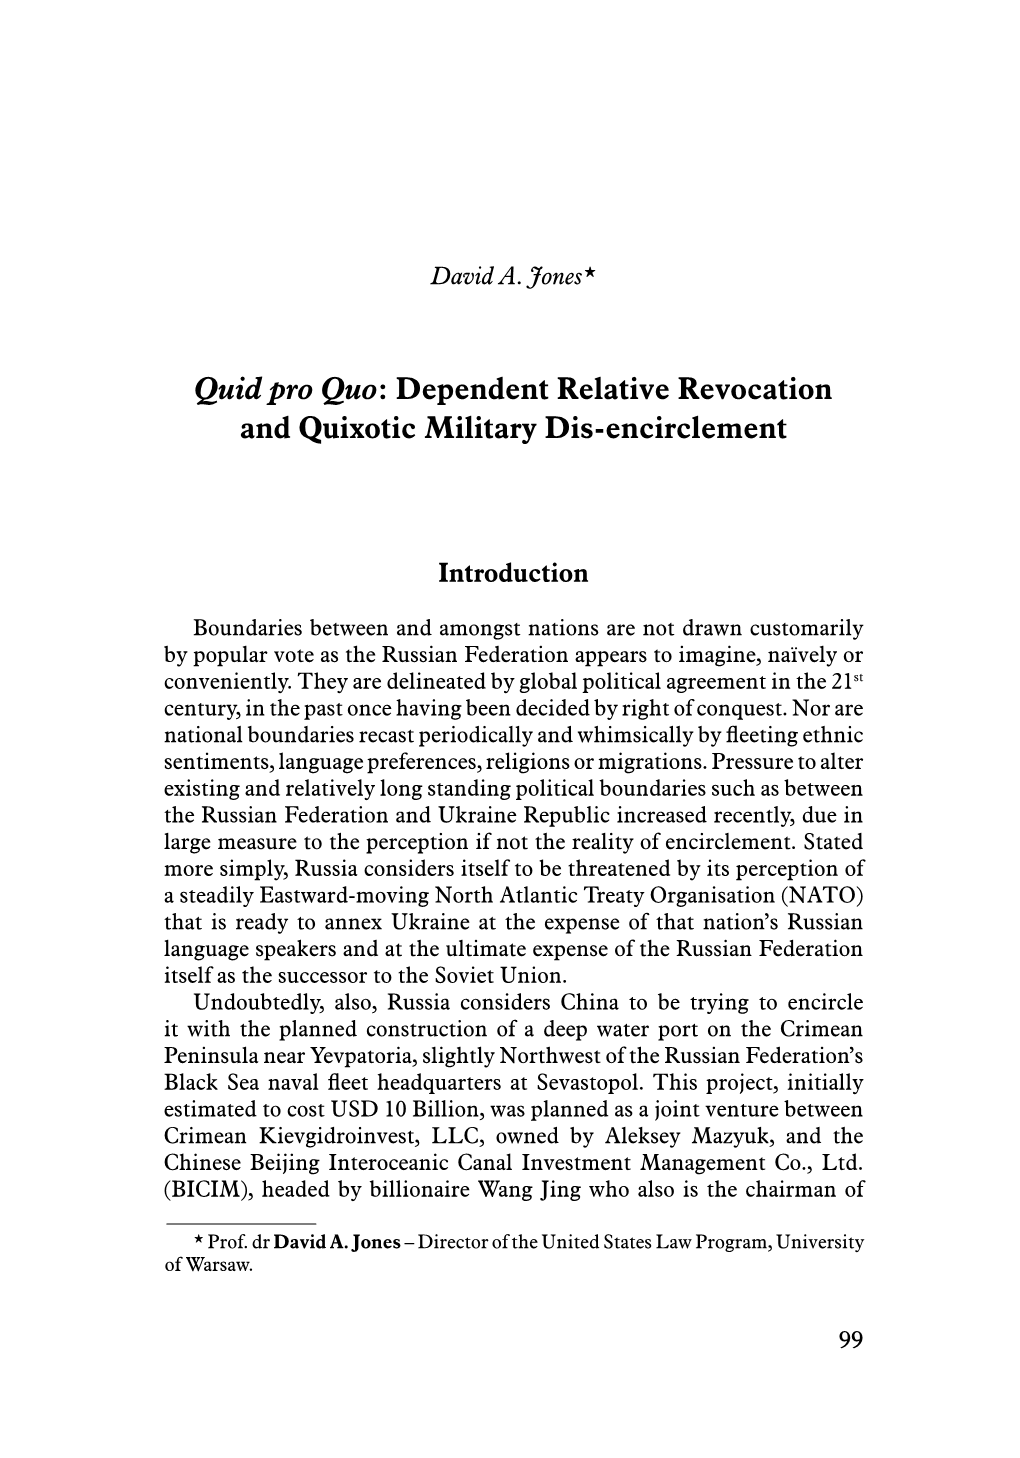 Quid Pro Quo: Dependent Relative Revocation and Quixotic Military Dis-Encirclement